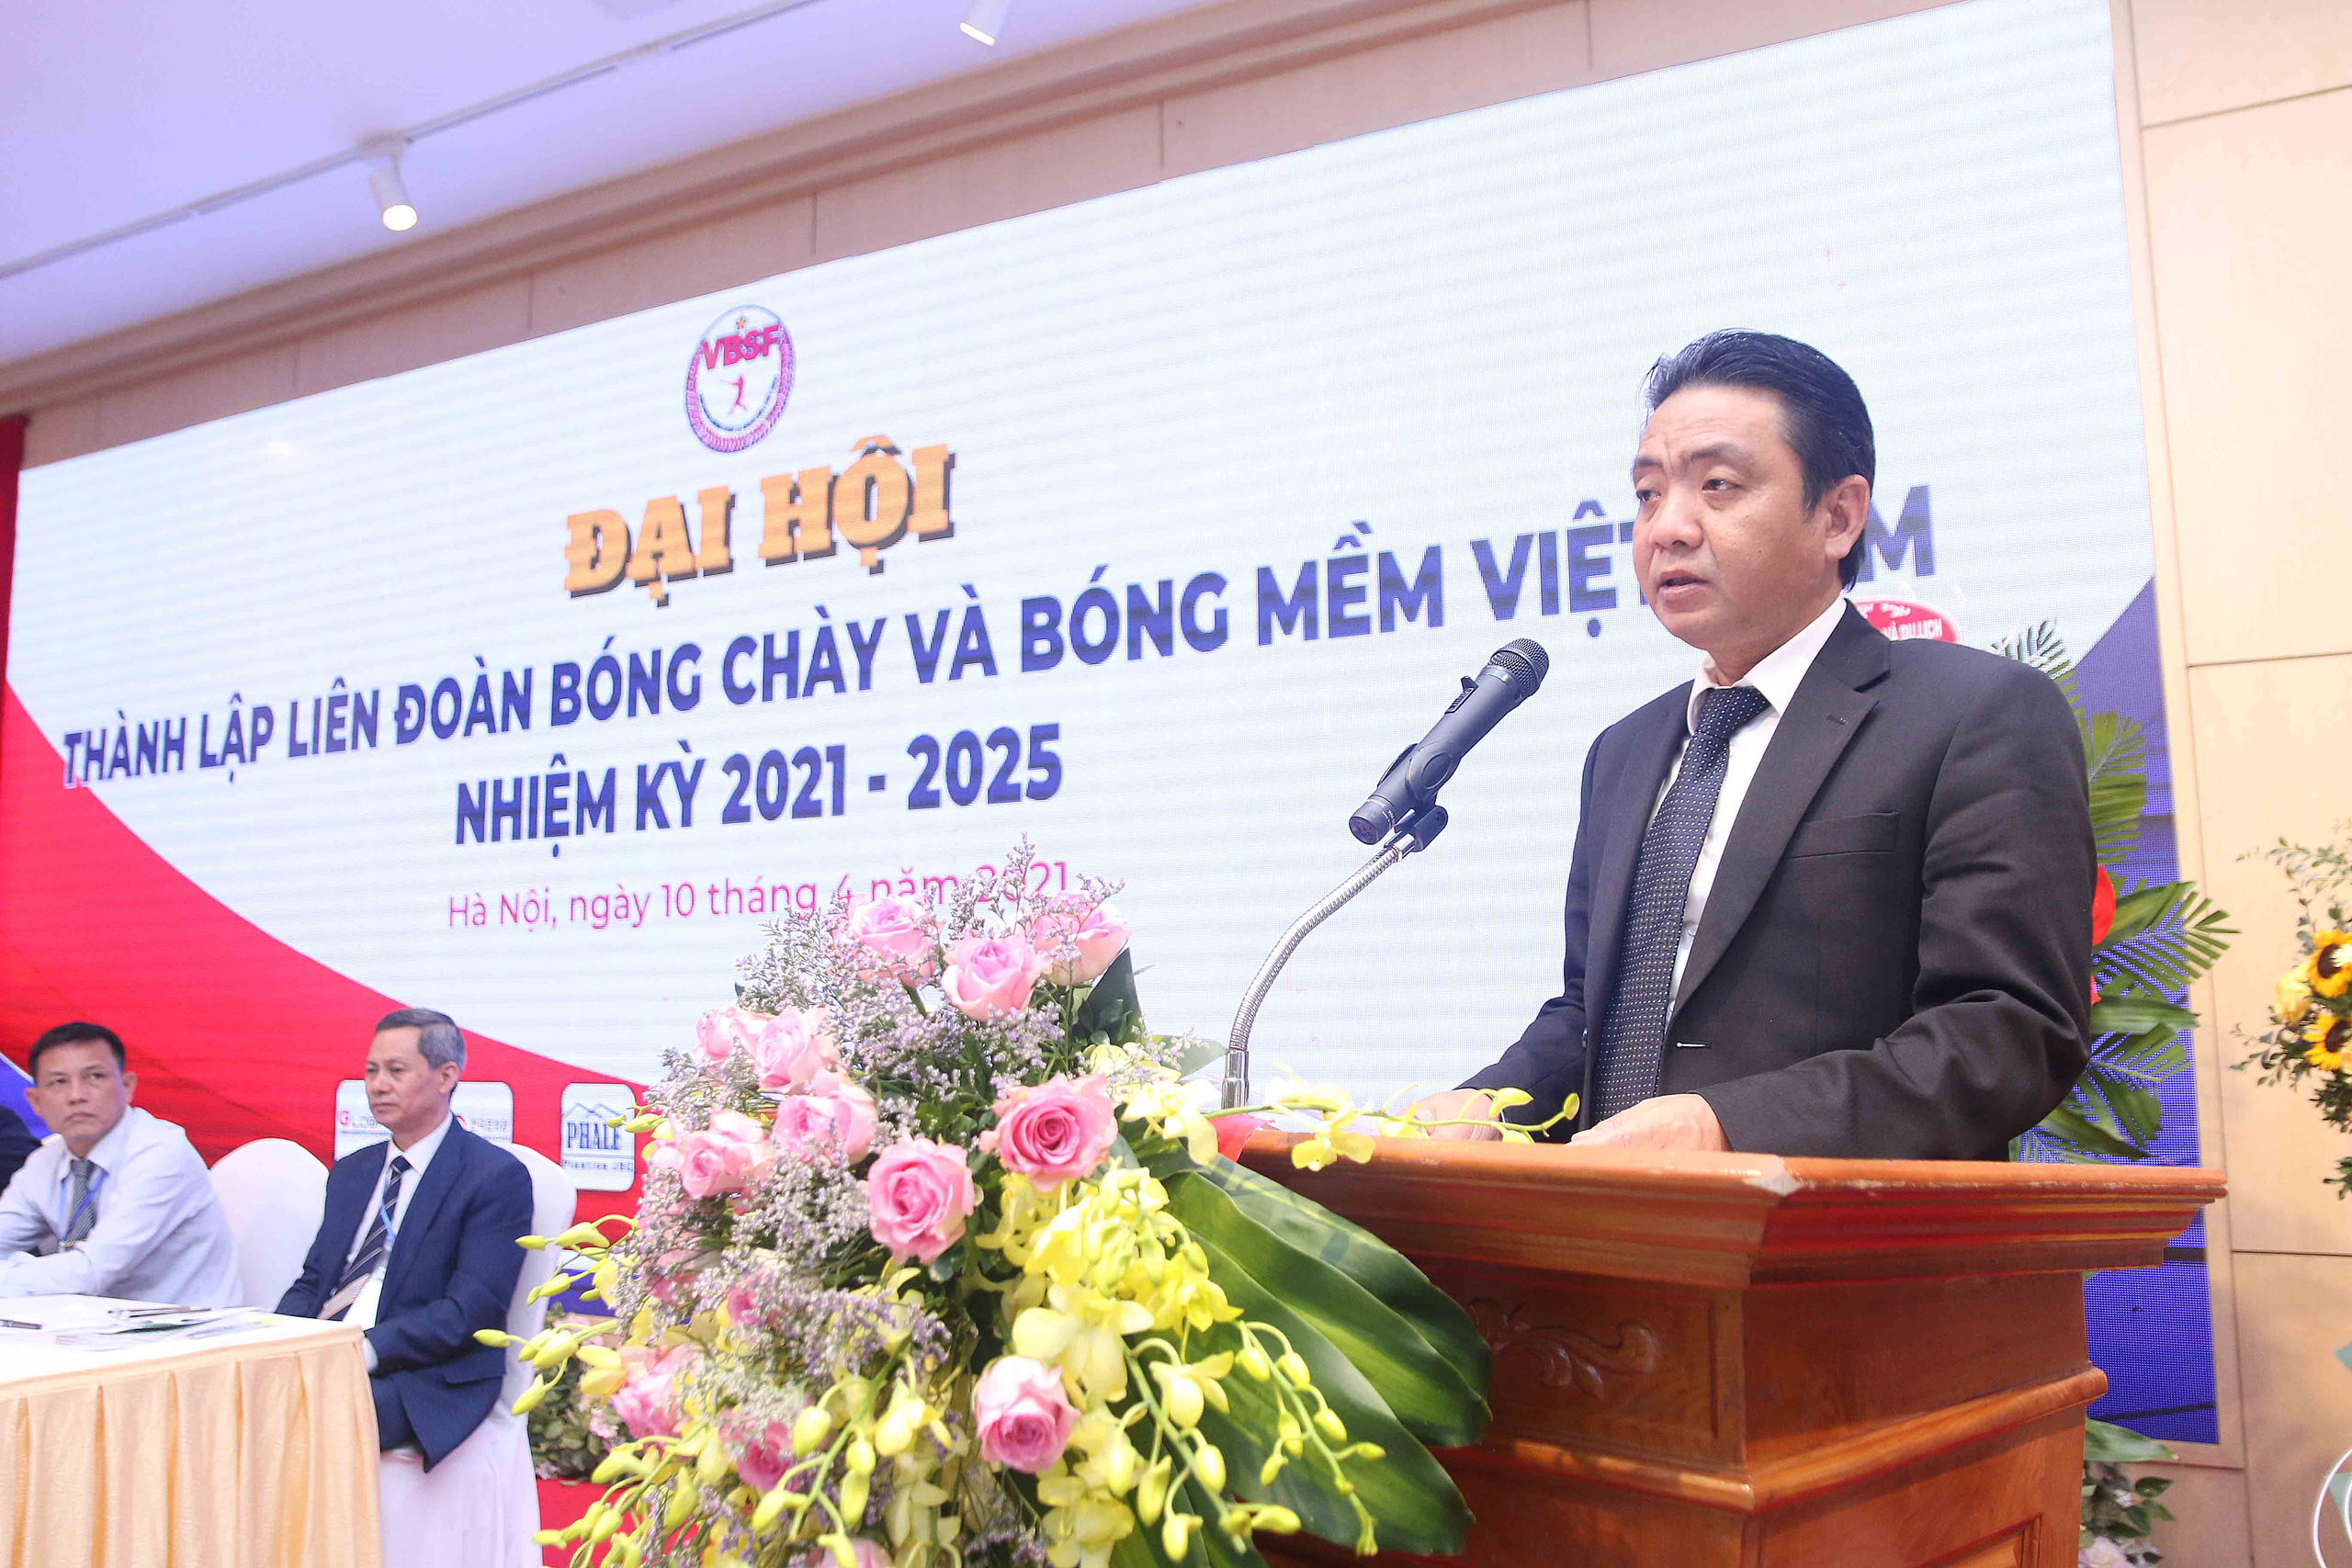 Ông Trần Đức Phấn giữ chức Chủ tịch Liên đoàn Bóng chày và Bóng mềm Việt Nam nhiệm kỳ 2021 – 2025 - Ảnh 1.